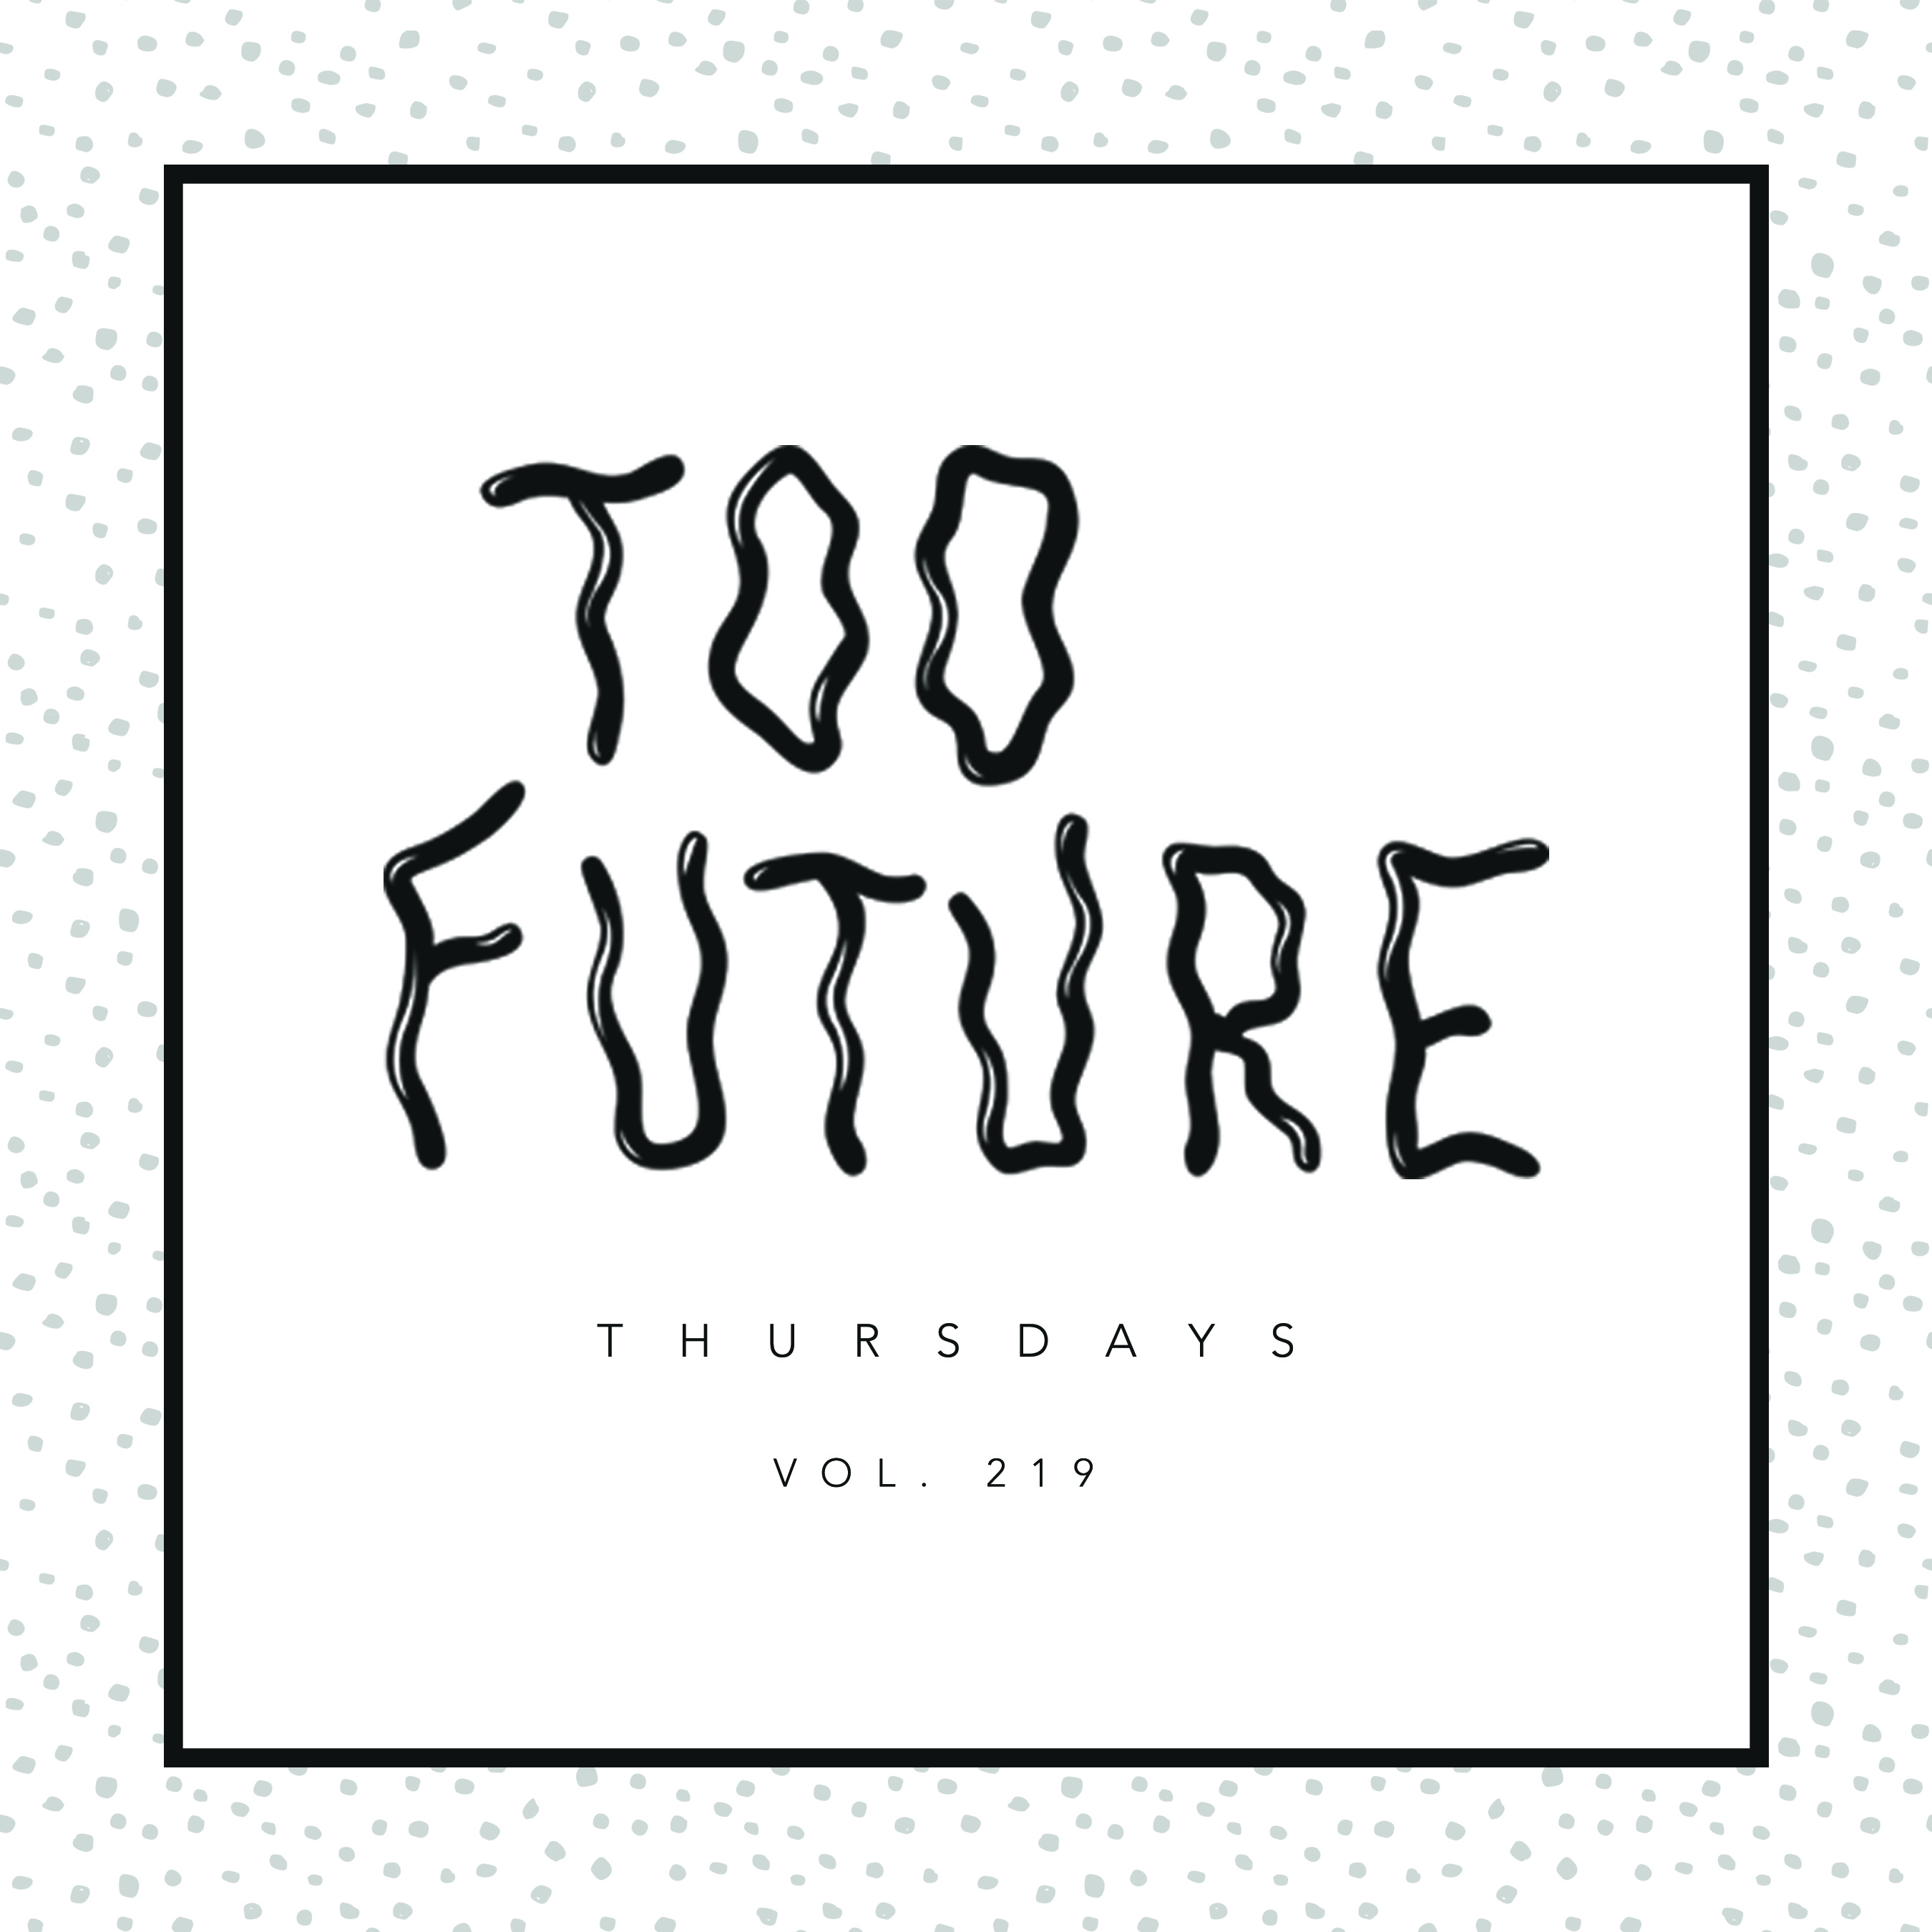 too-future-thursdays-vol-219